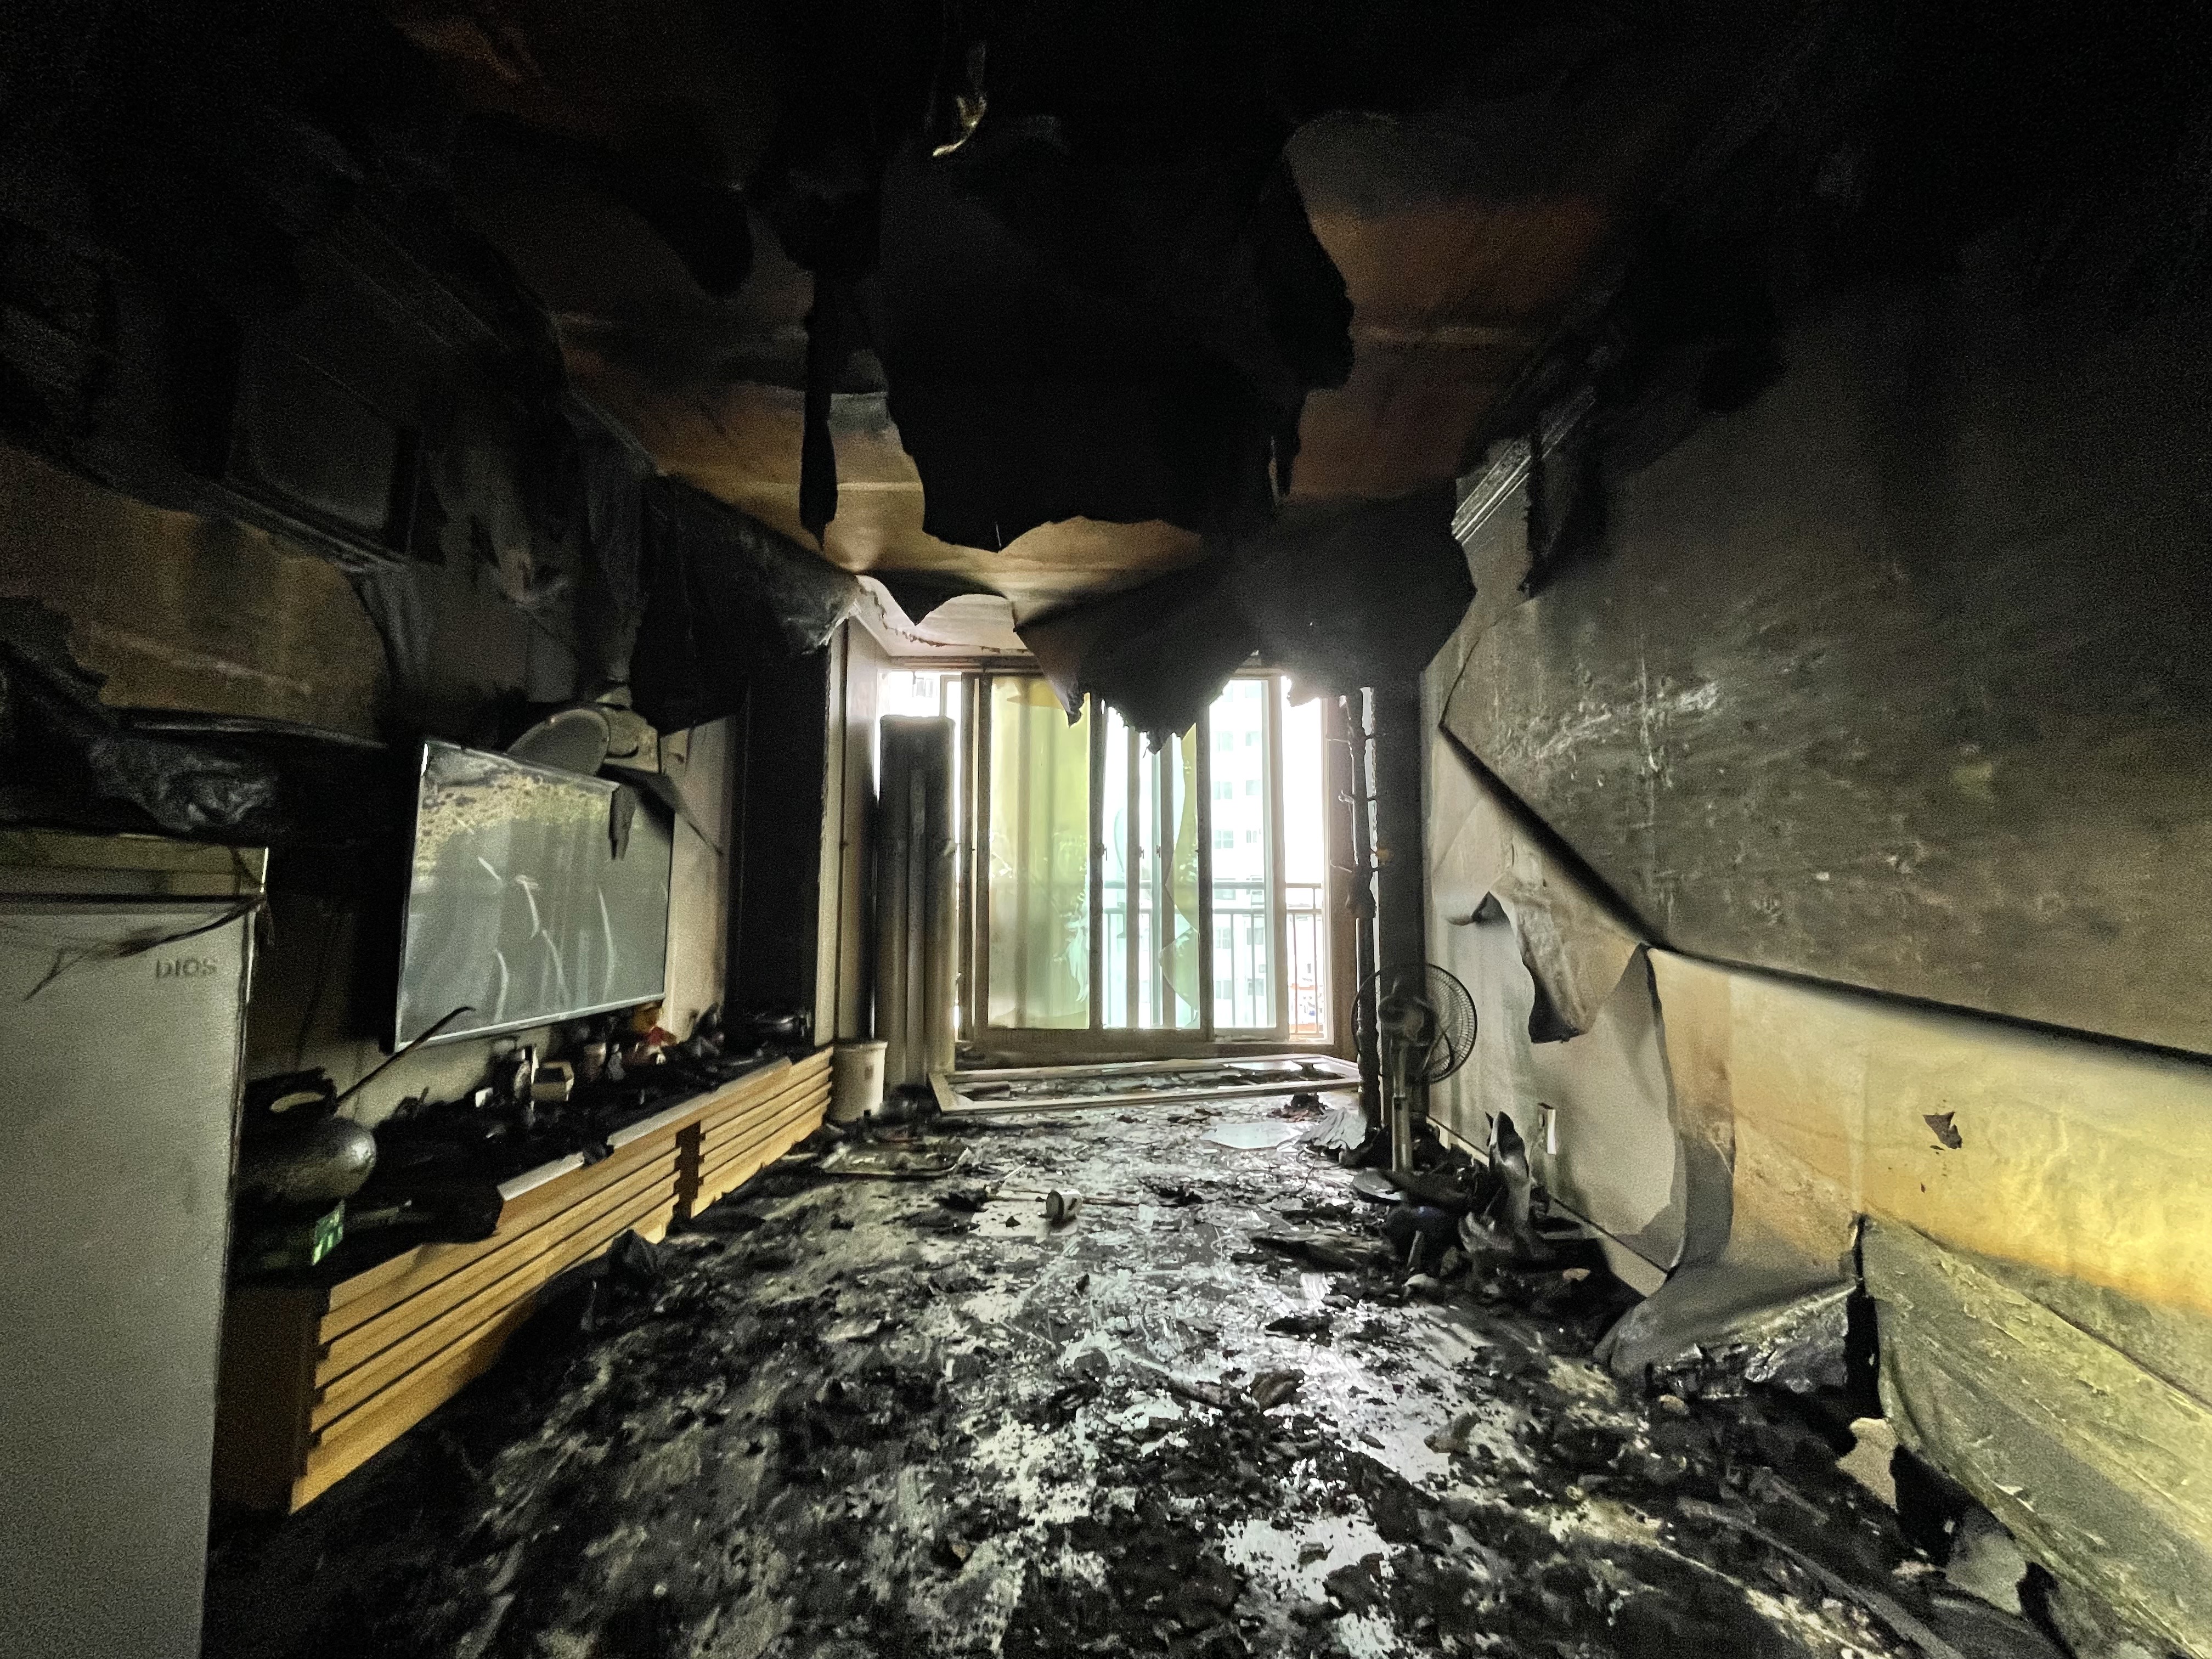 5일 오전 7시 56분쯤 울산 중구의 한 아파트에서 화재가 발생했다. 울산소방본부 제공